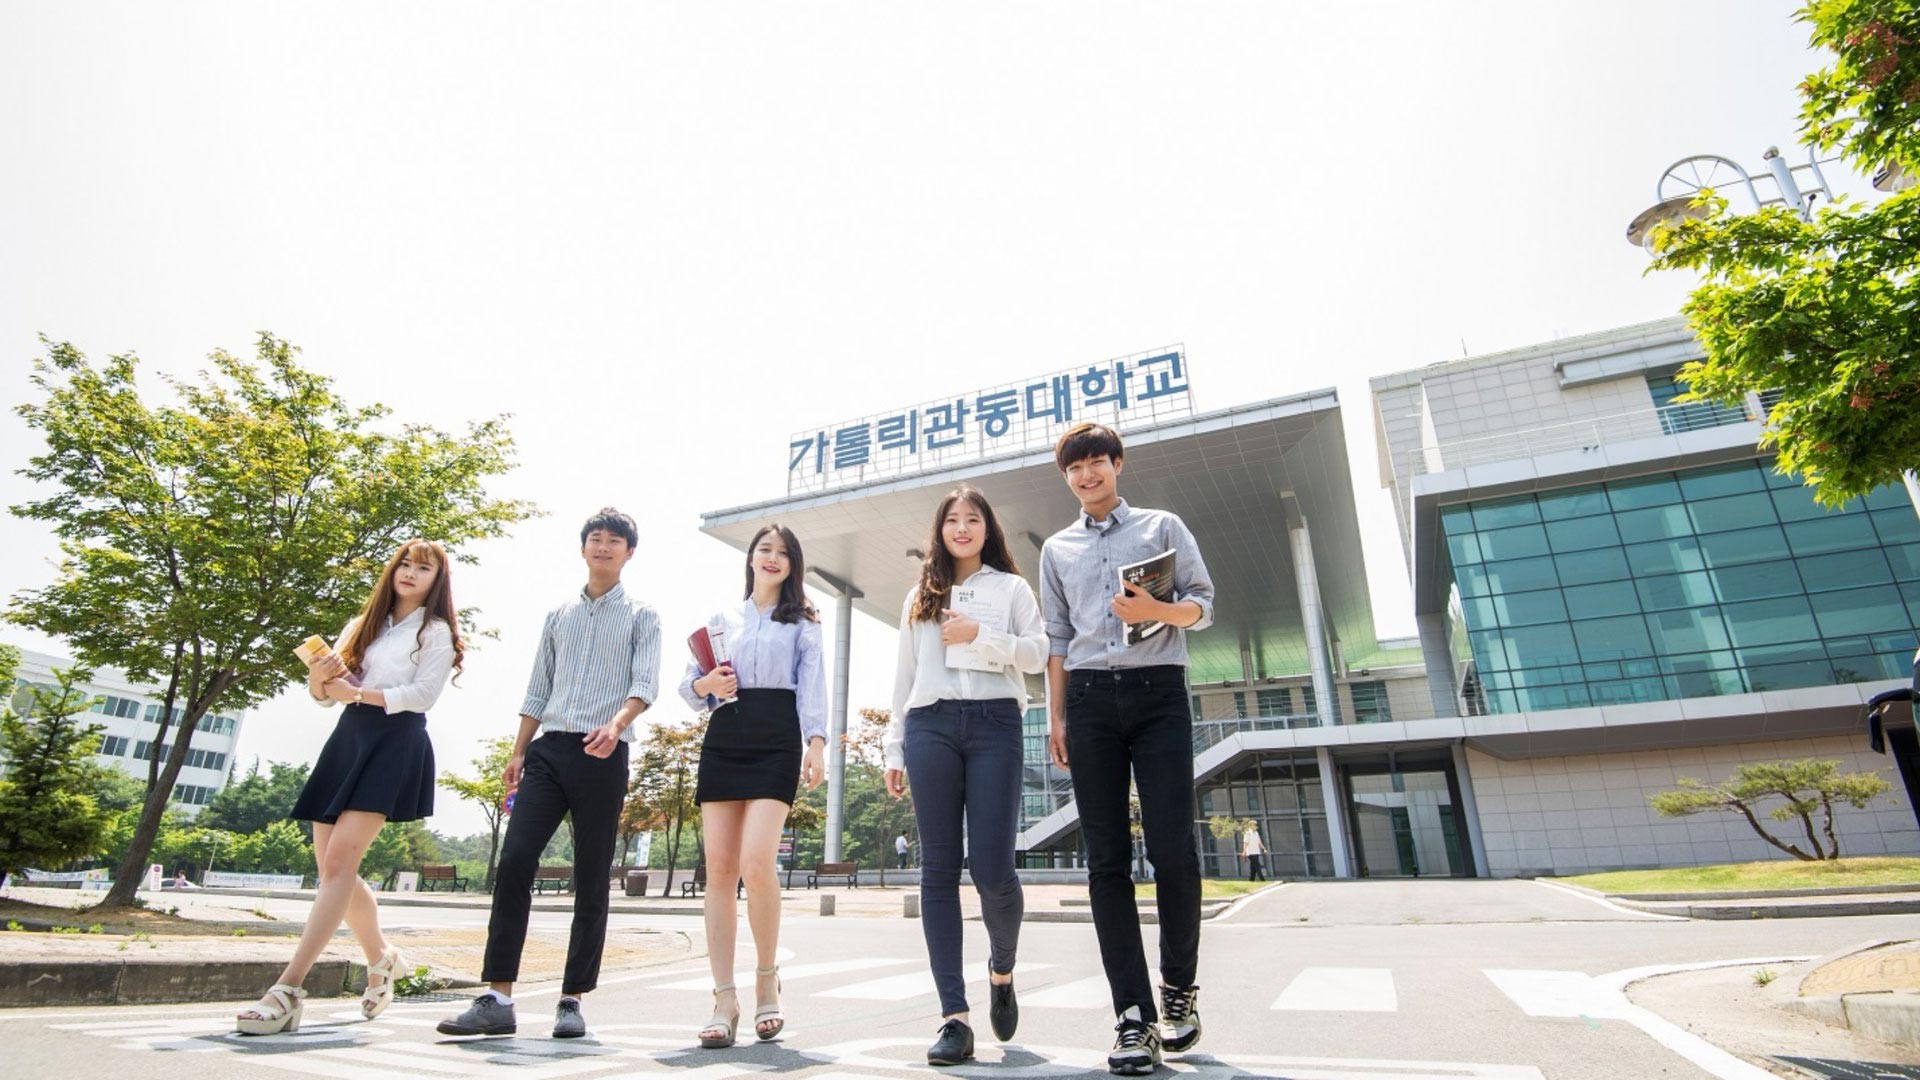 Kinh nghiệm học tiếng Hàn hiệu quả dành cho người mới bắt đầu